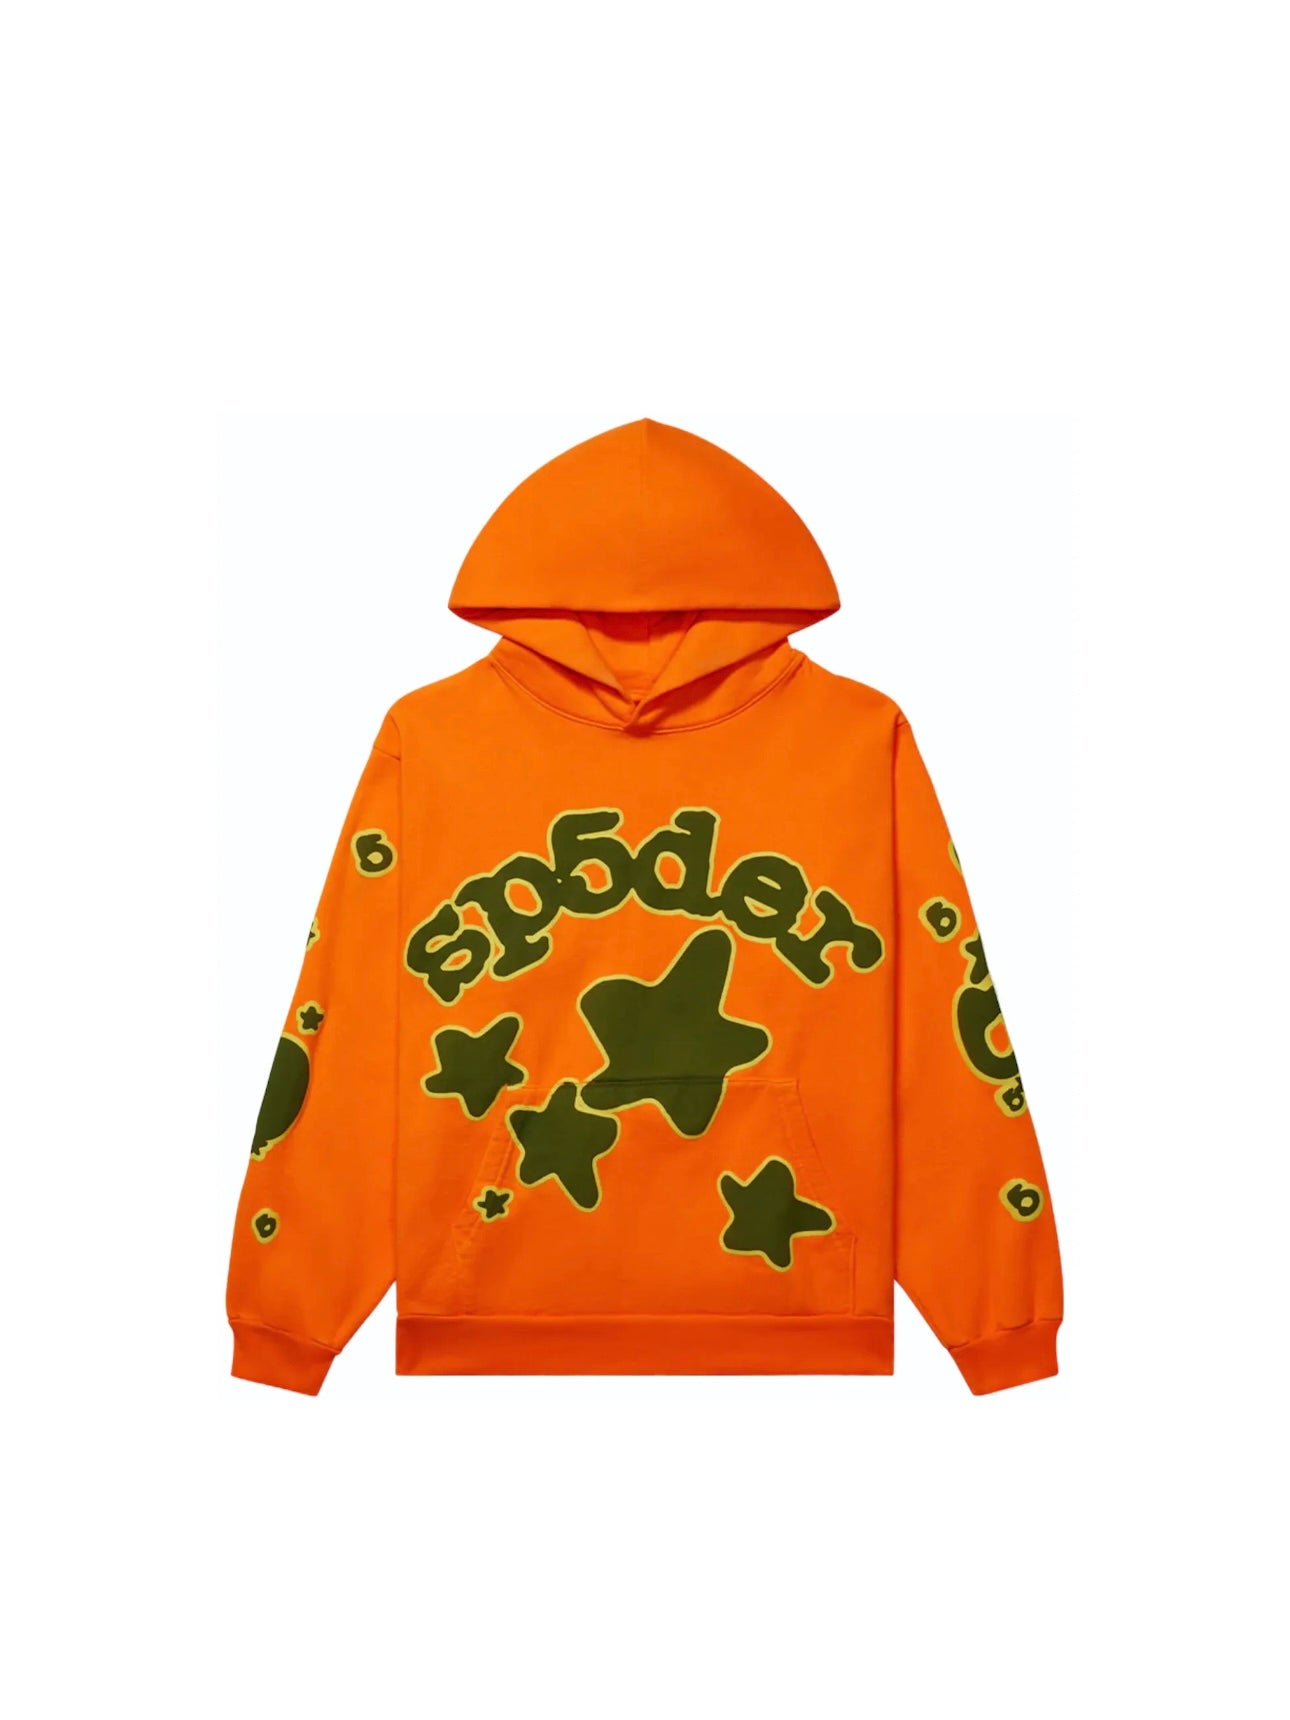 Sp5der Hoodie “Orange Beluga”